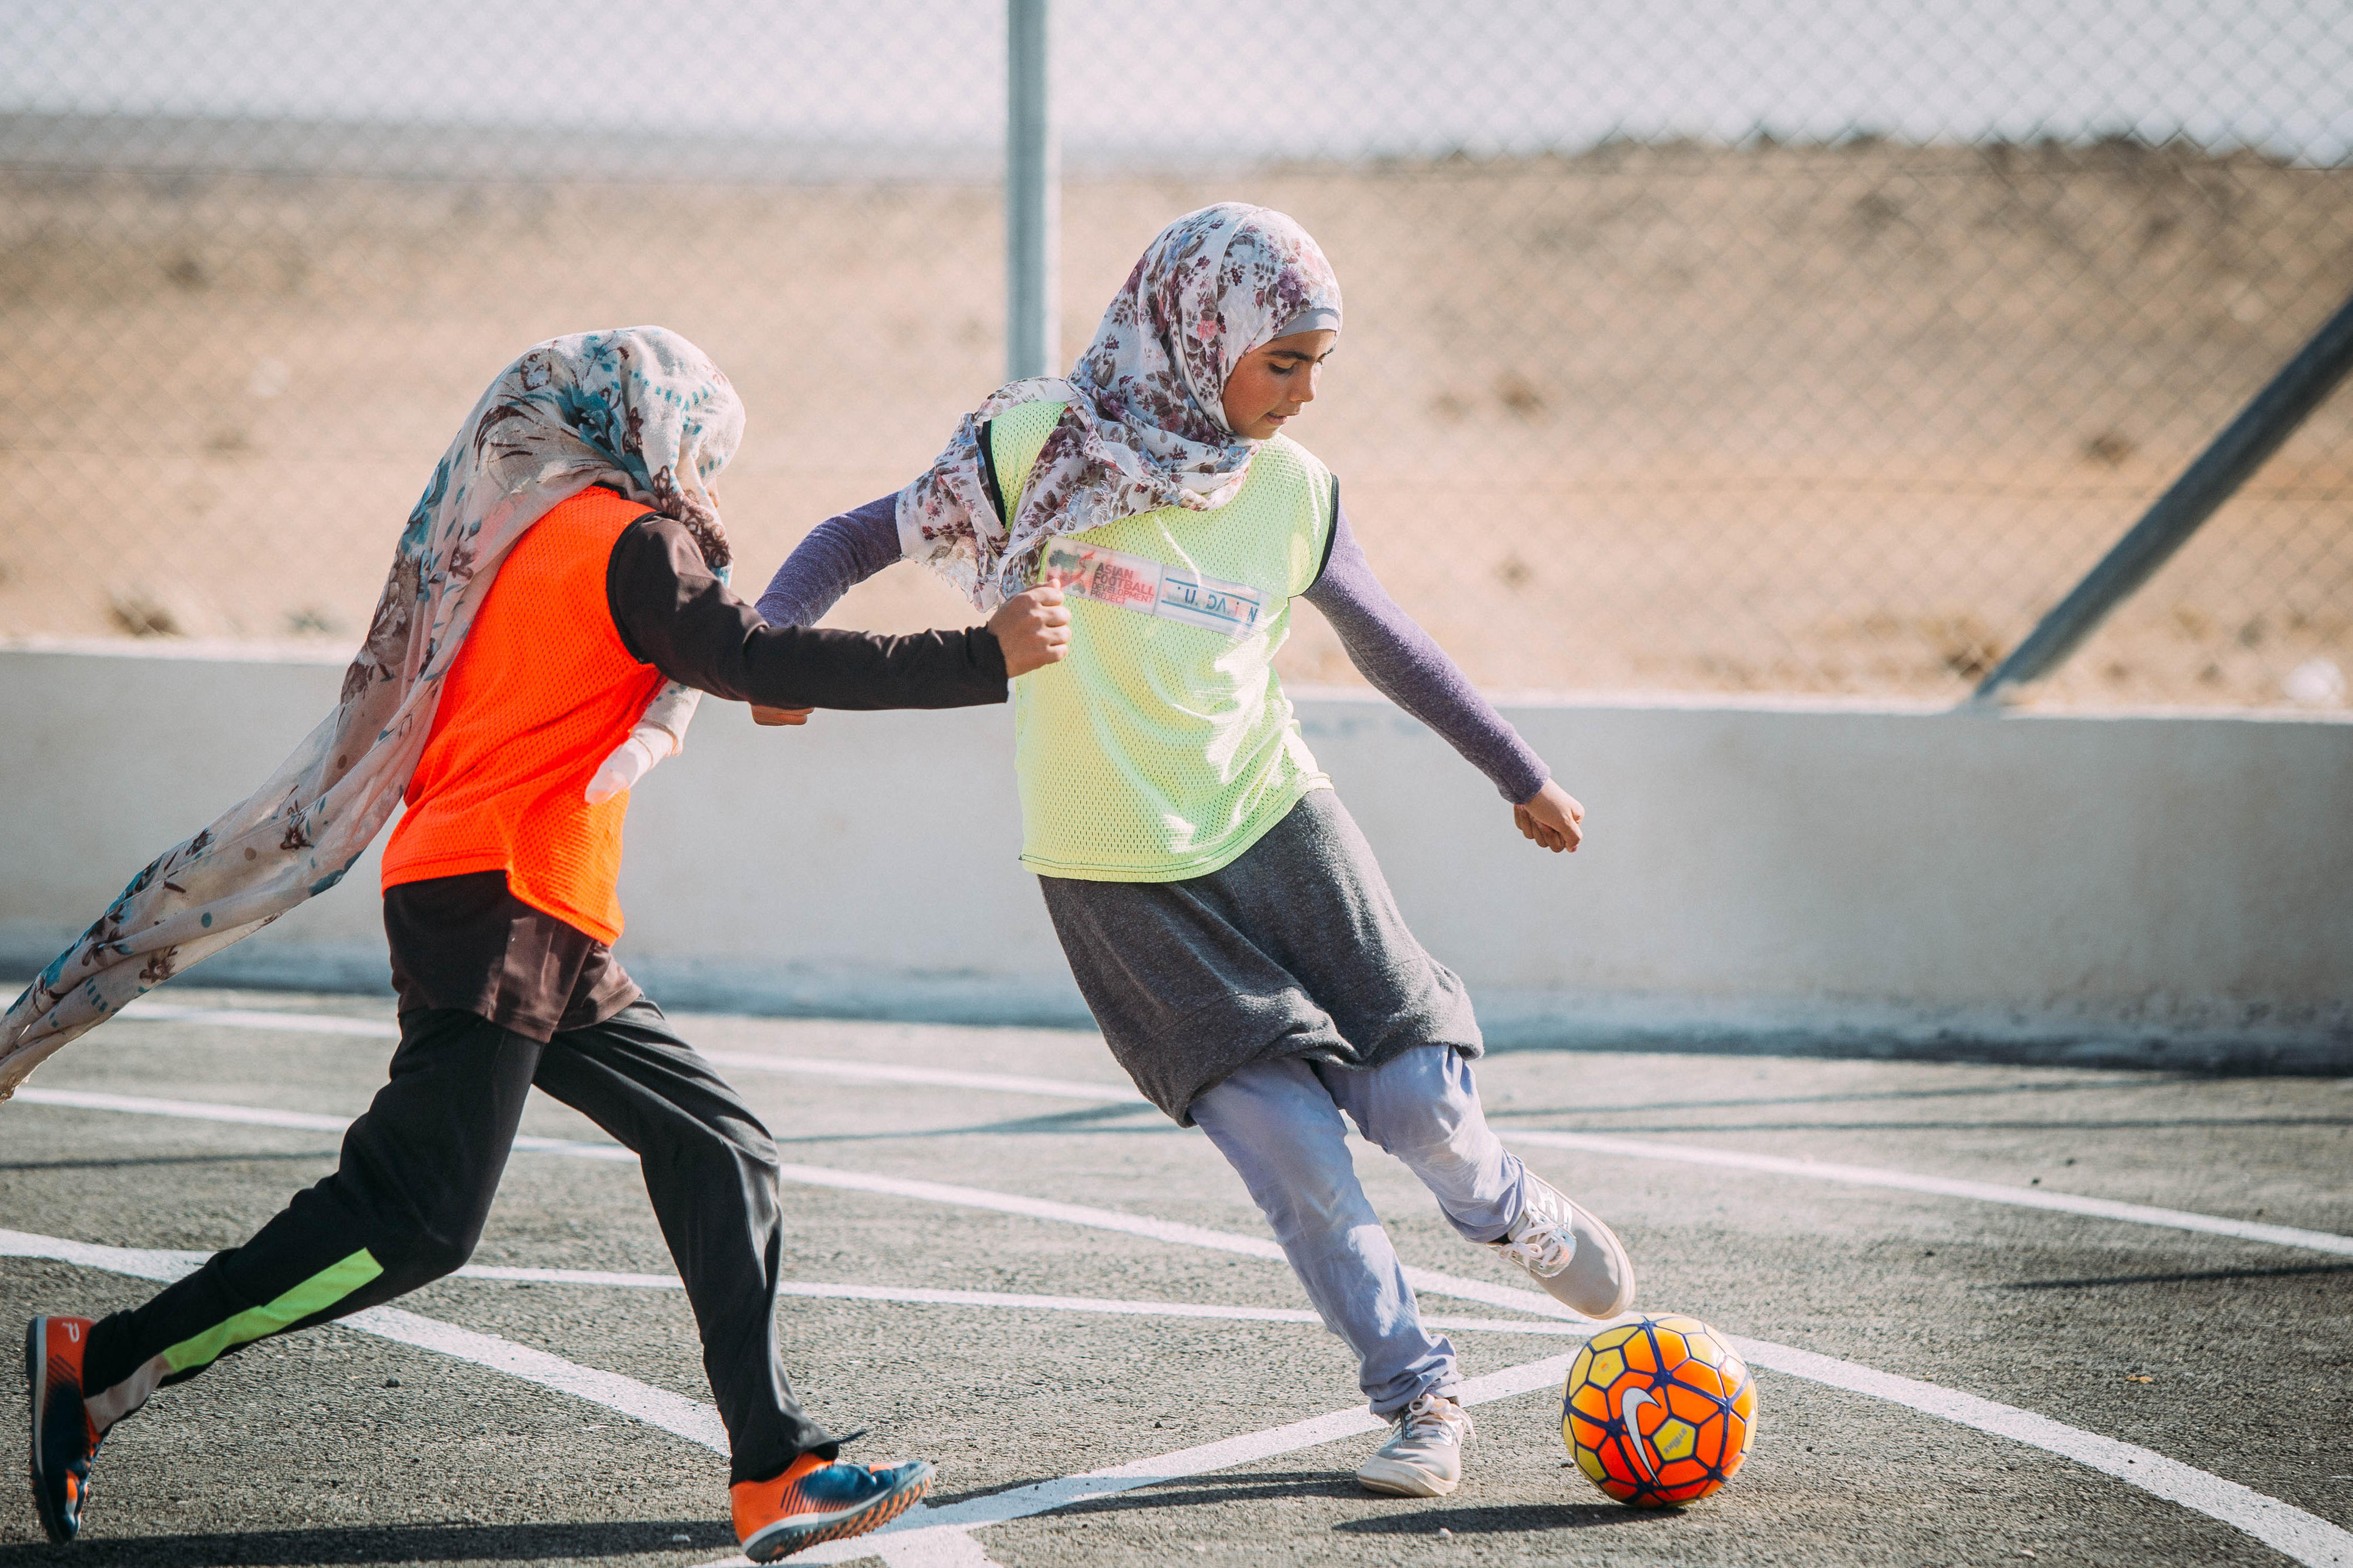 Teilnehmerinnen des Projekts "Sport für Entwicklung" in Jordanien